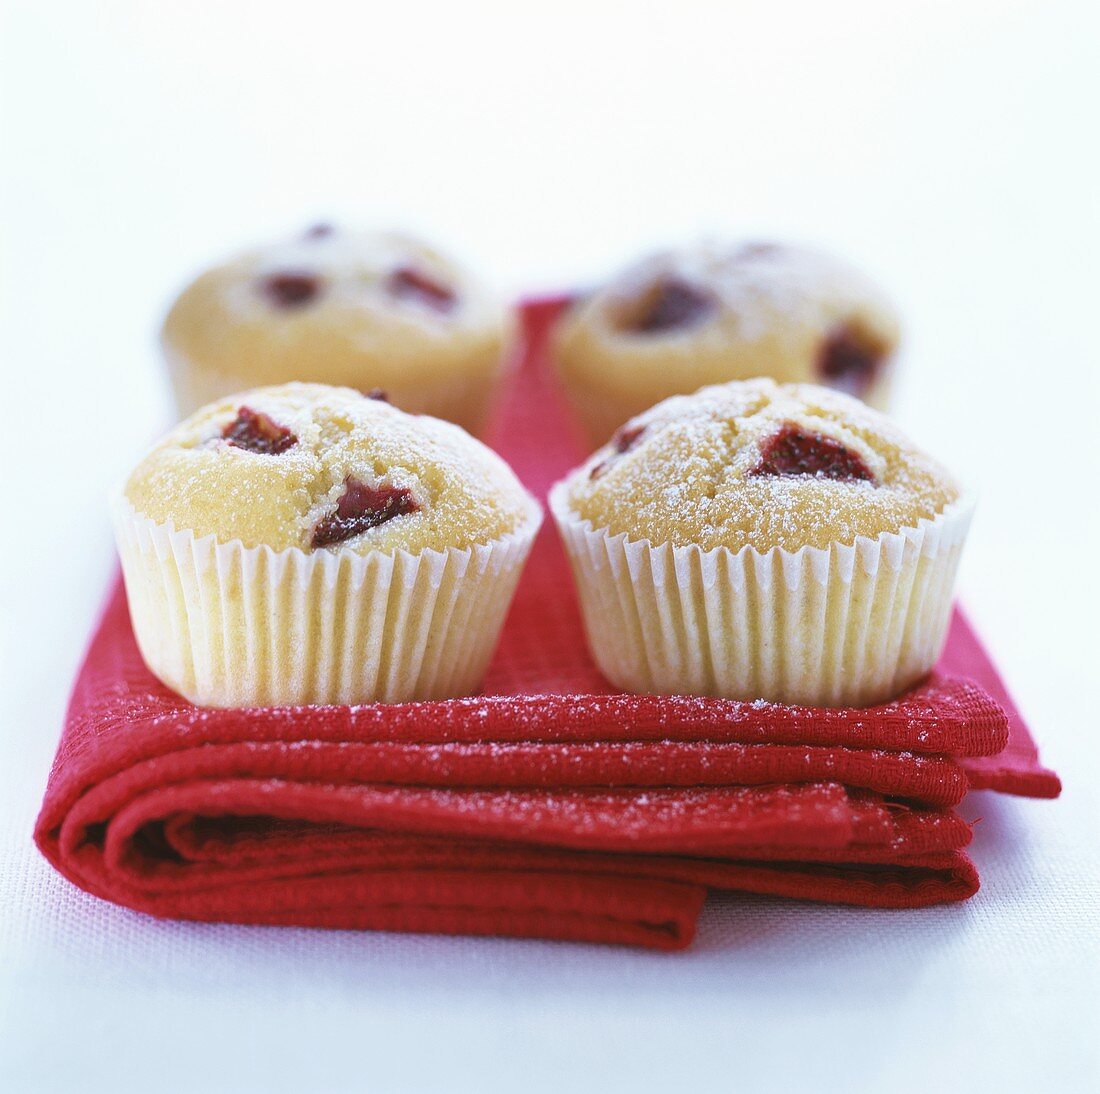 Vier Muffins in Papierförmchen auf rotem Tuch